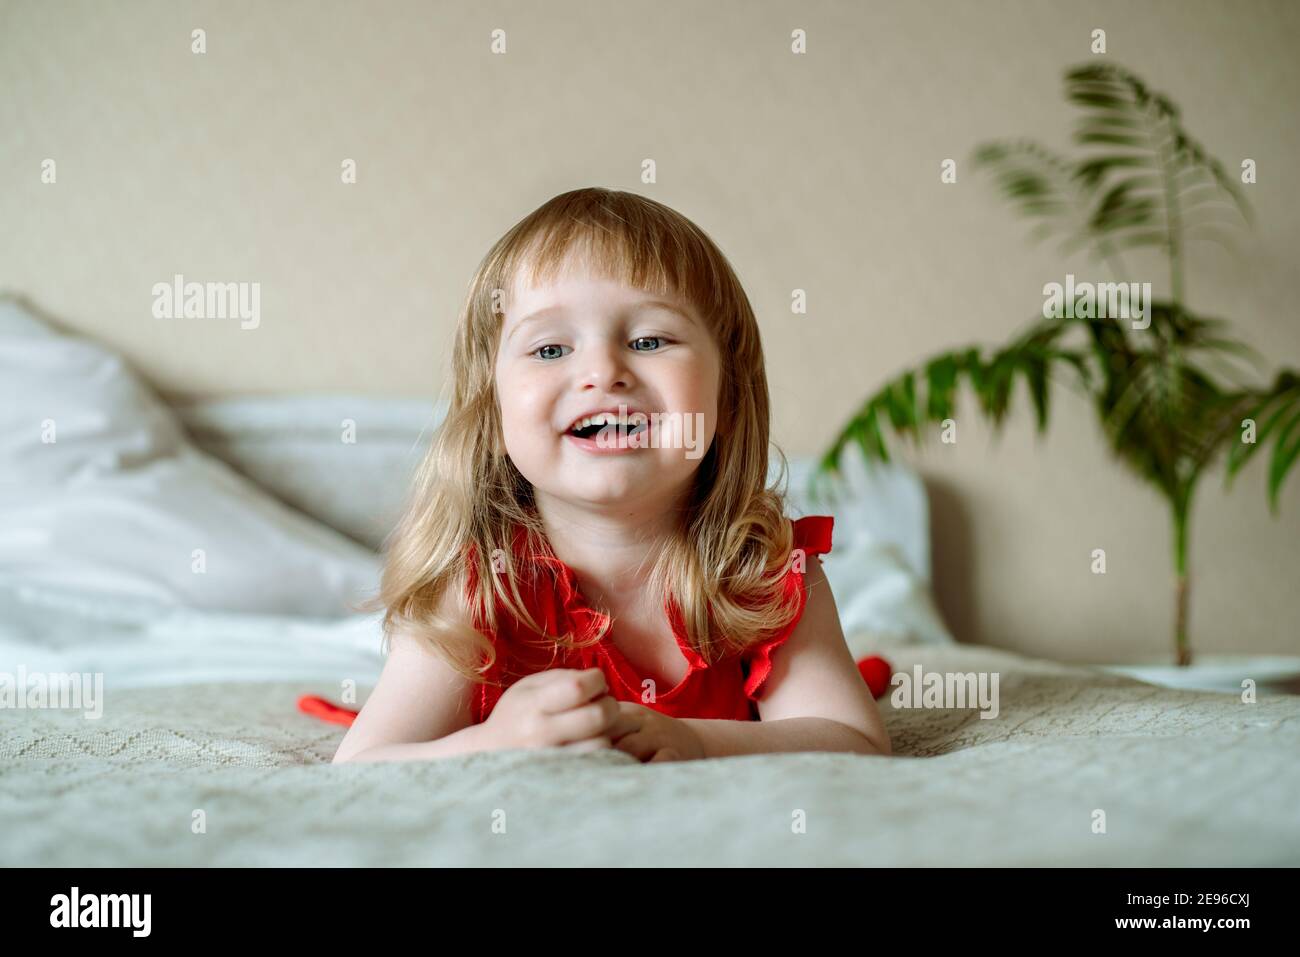 Niedliches rothaariges blauäugiges emotionales Mädchen lacht. Liegt auf dem Bett im Schlafzimmer, das Bett ist ein weißes Bett, ein rotes Kleid für ein Kind. Kissen und Stockfoto